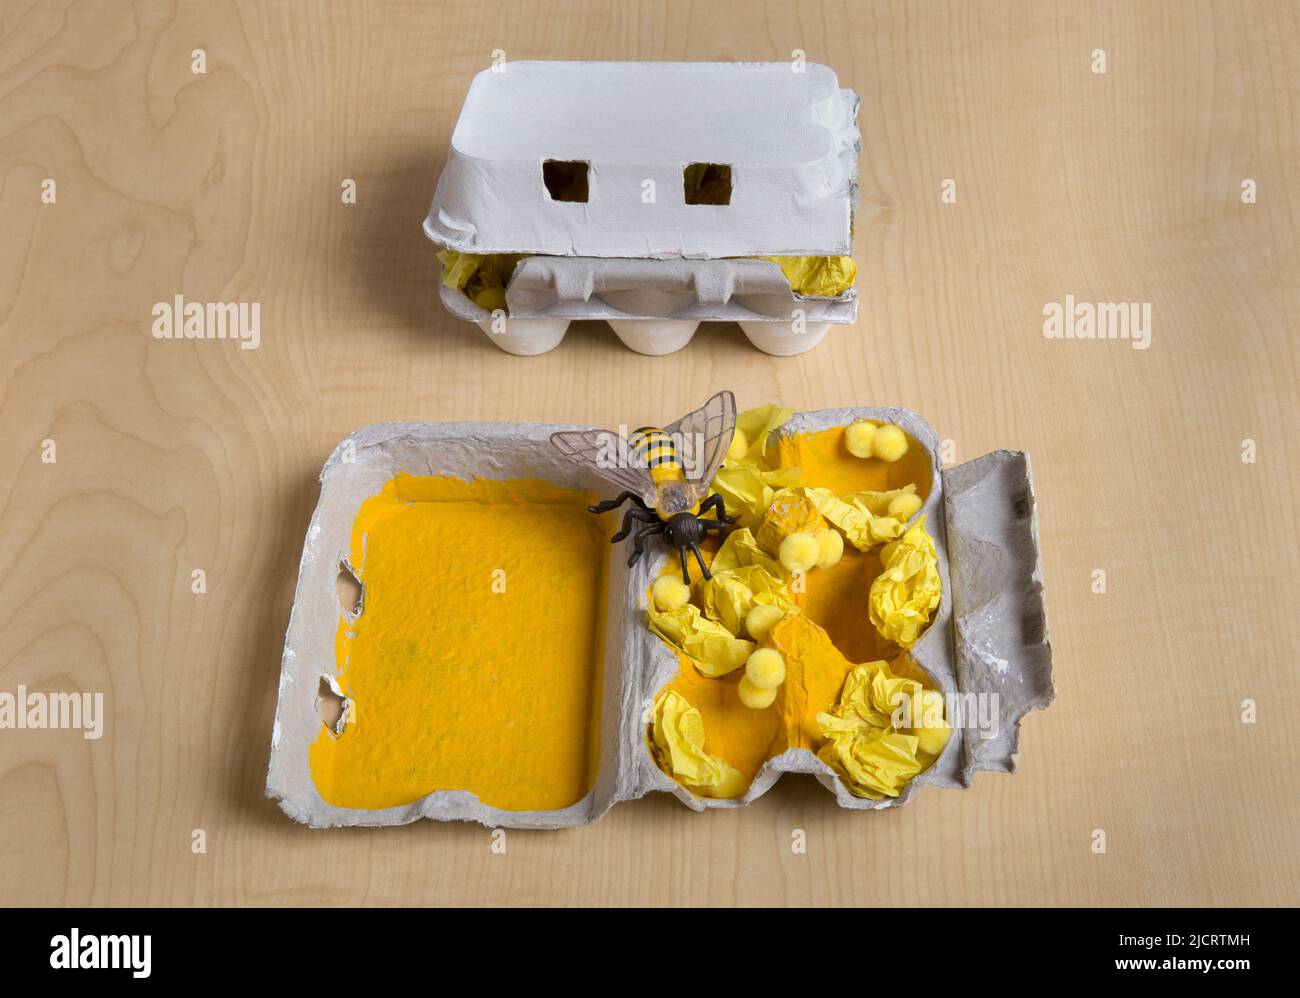 Projet d’artisanat pour enfants utilisant un carton d’œufs pour décrire l’intérieur d’un nid d’abeilles avec des larves et du pollen. Banque D'Images